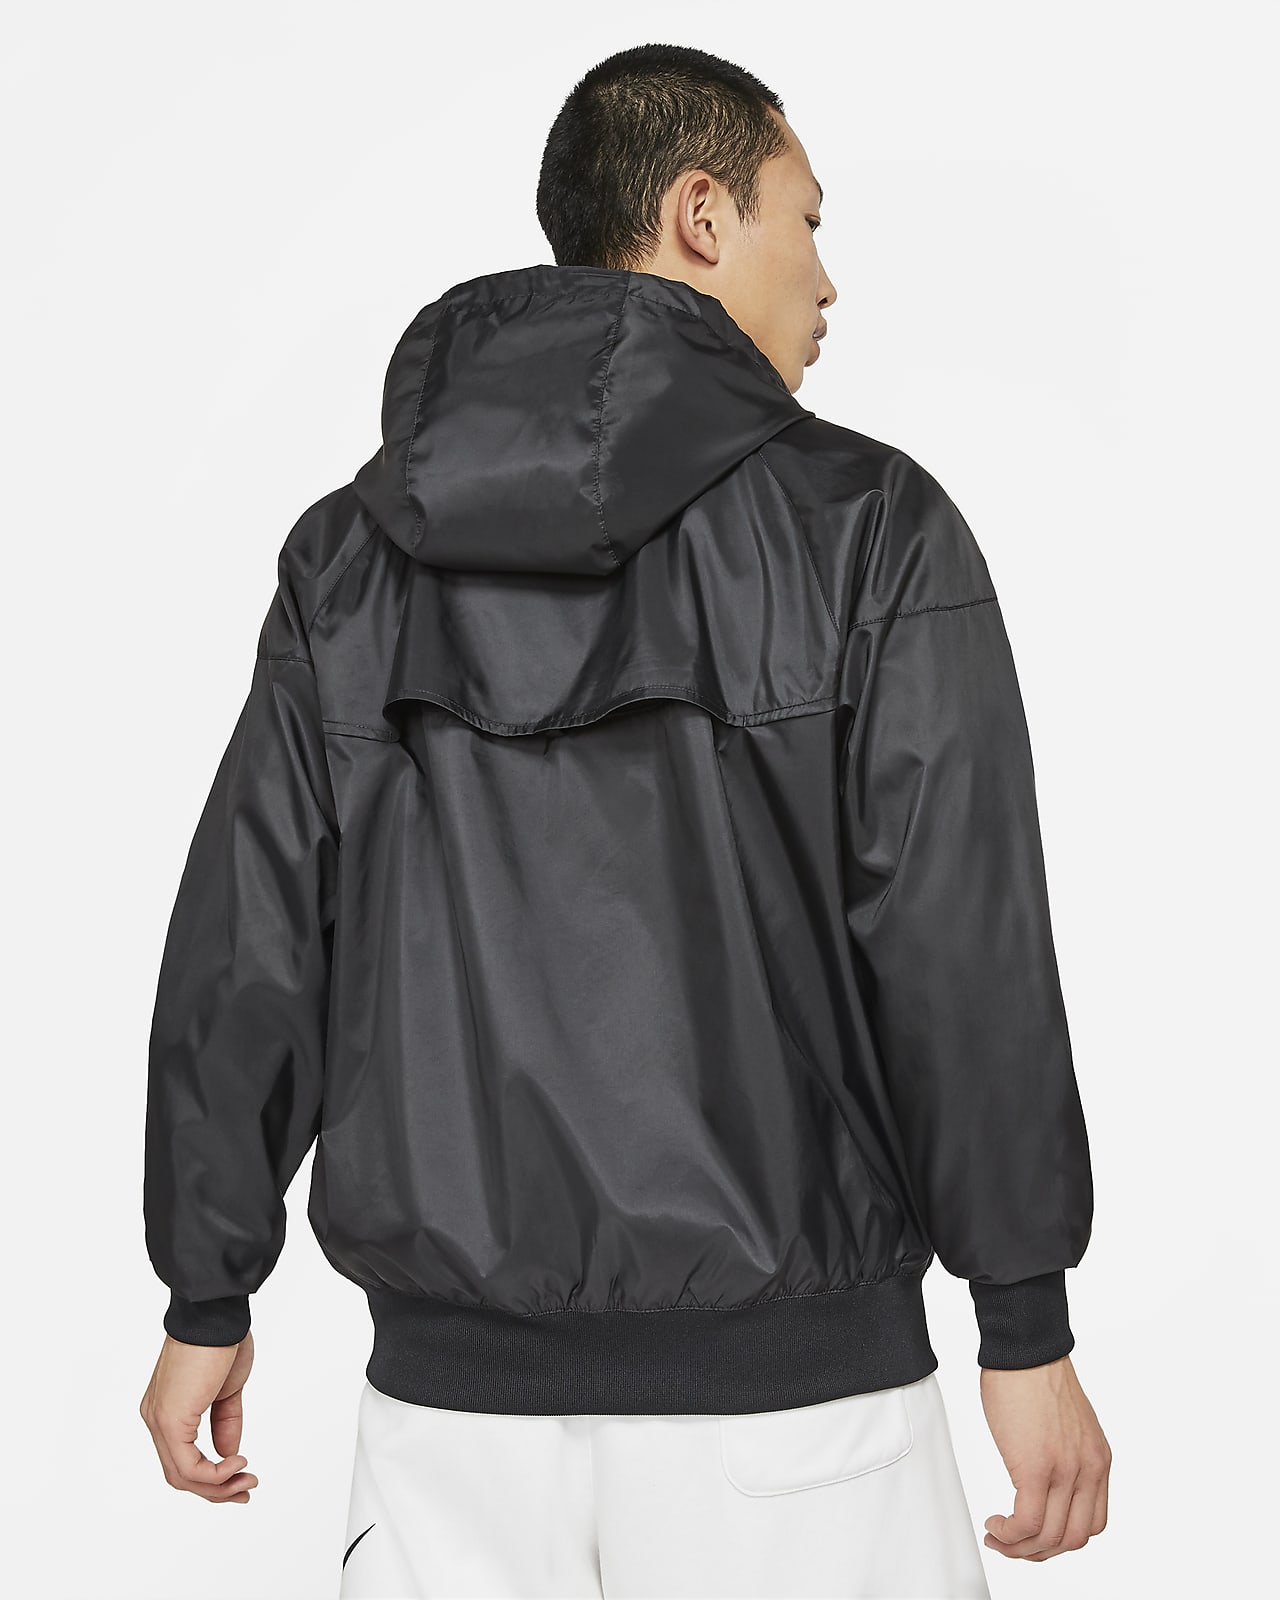 Hooded jacket Nike Sportswear Windrunner